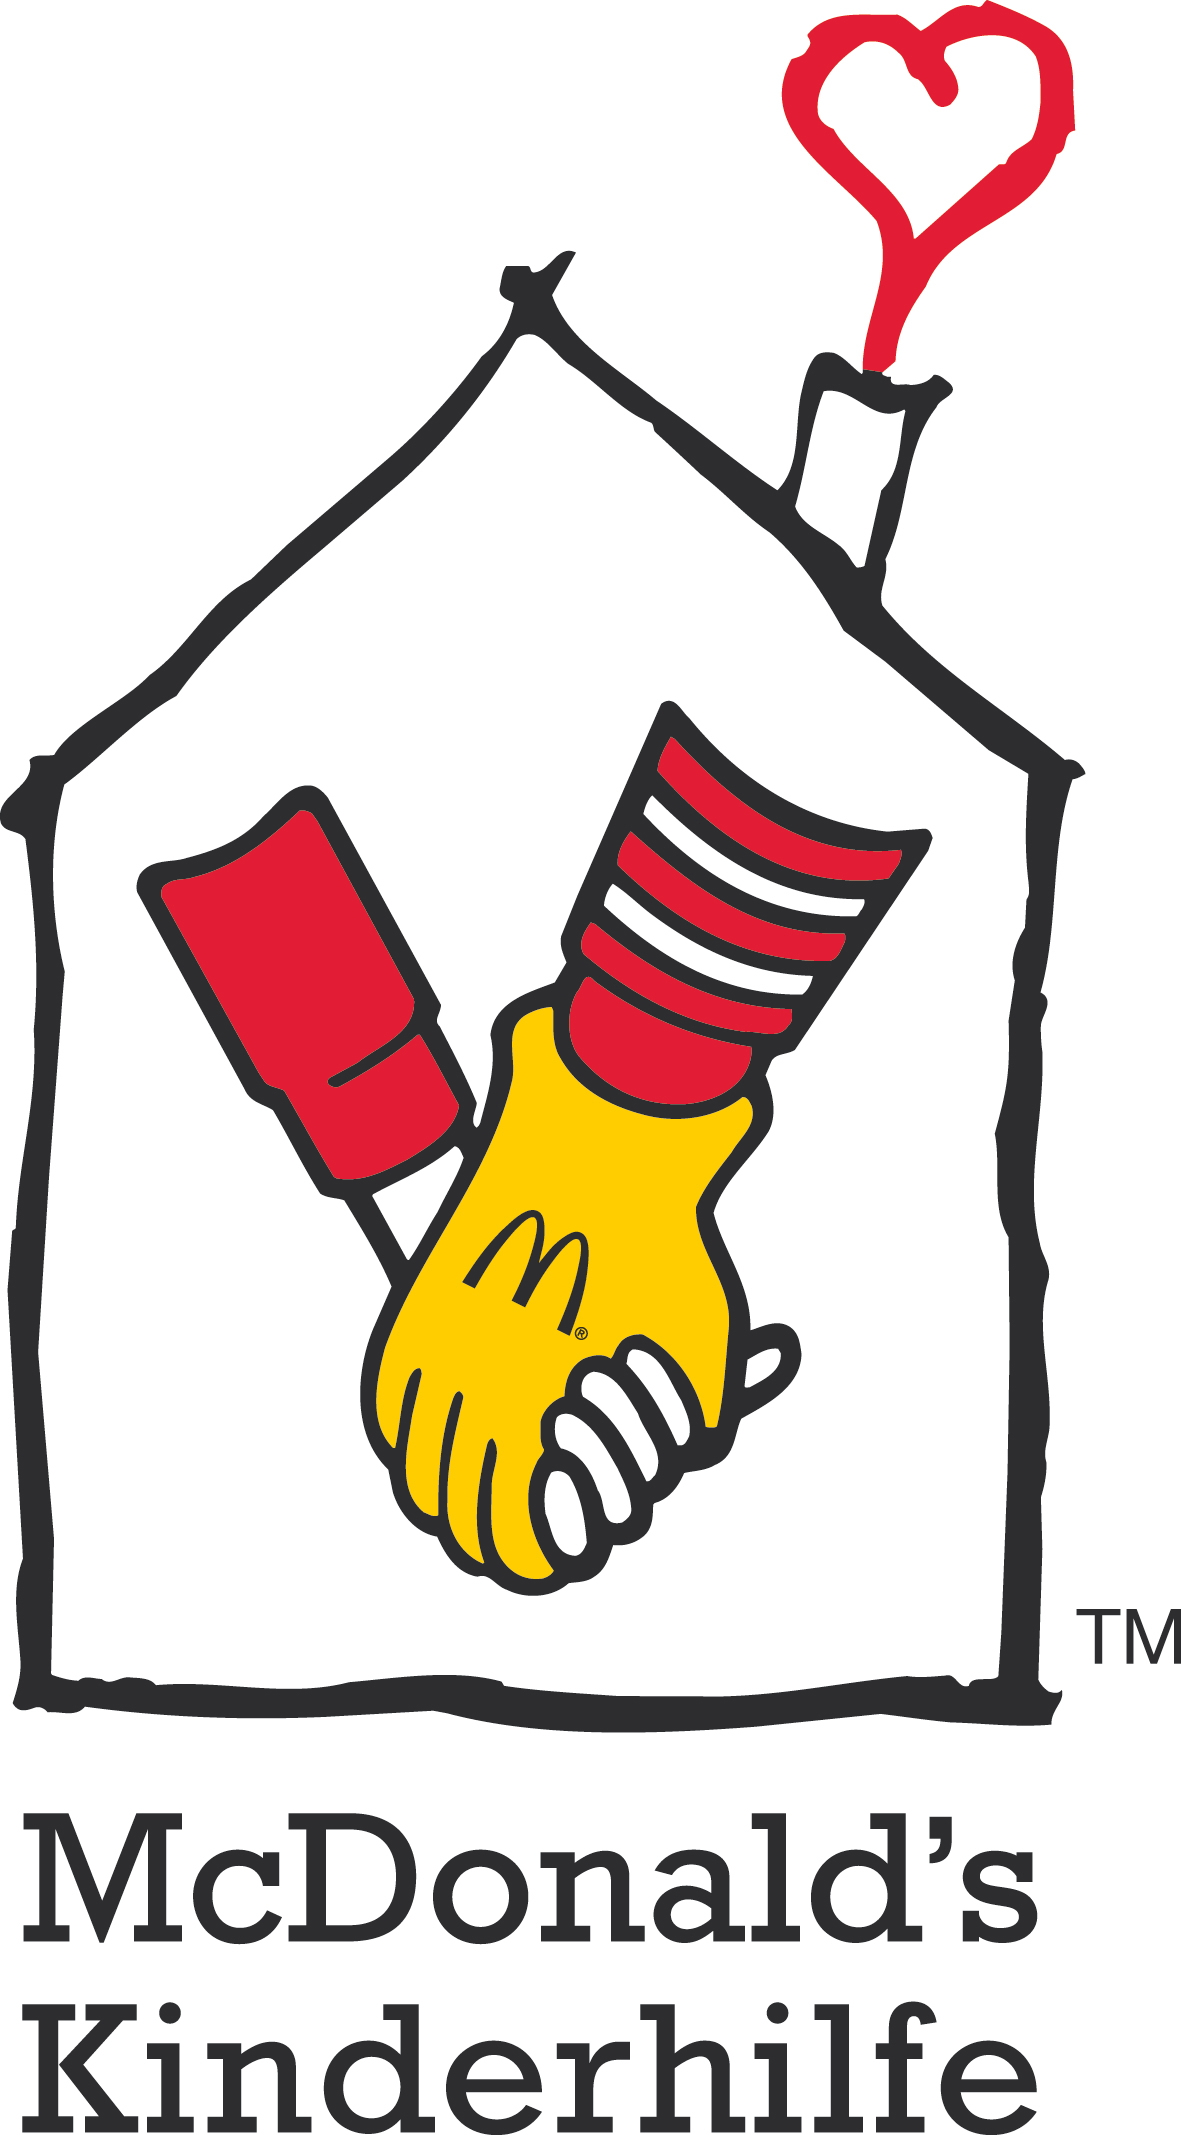 Deutsche-Politik-News.de | McDonald's Kinderhilfe Stiftung